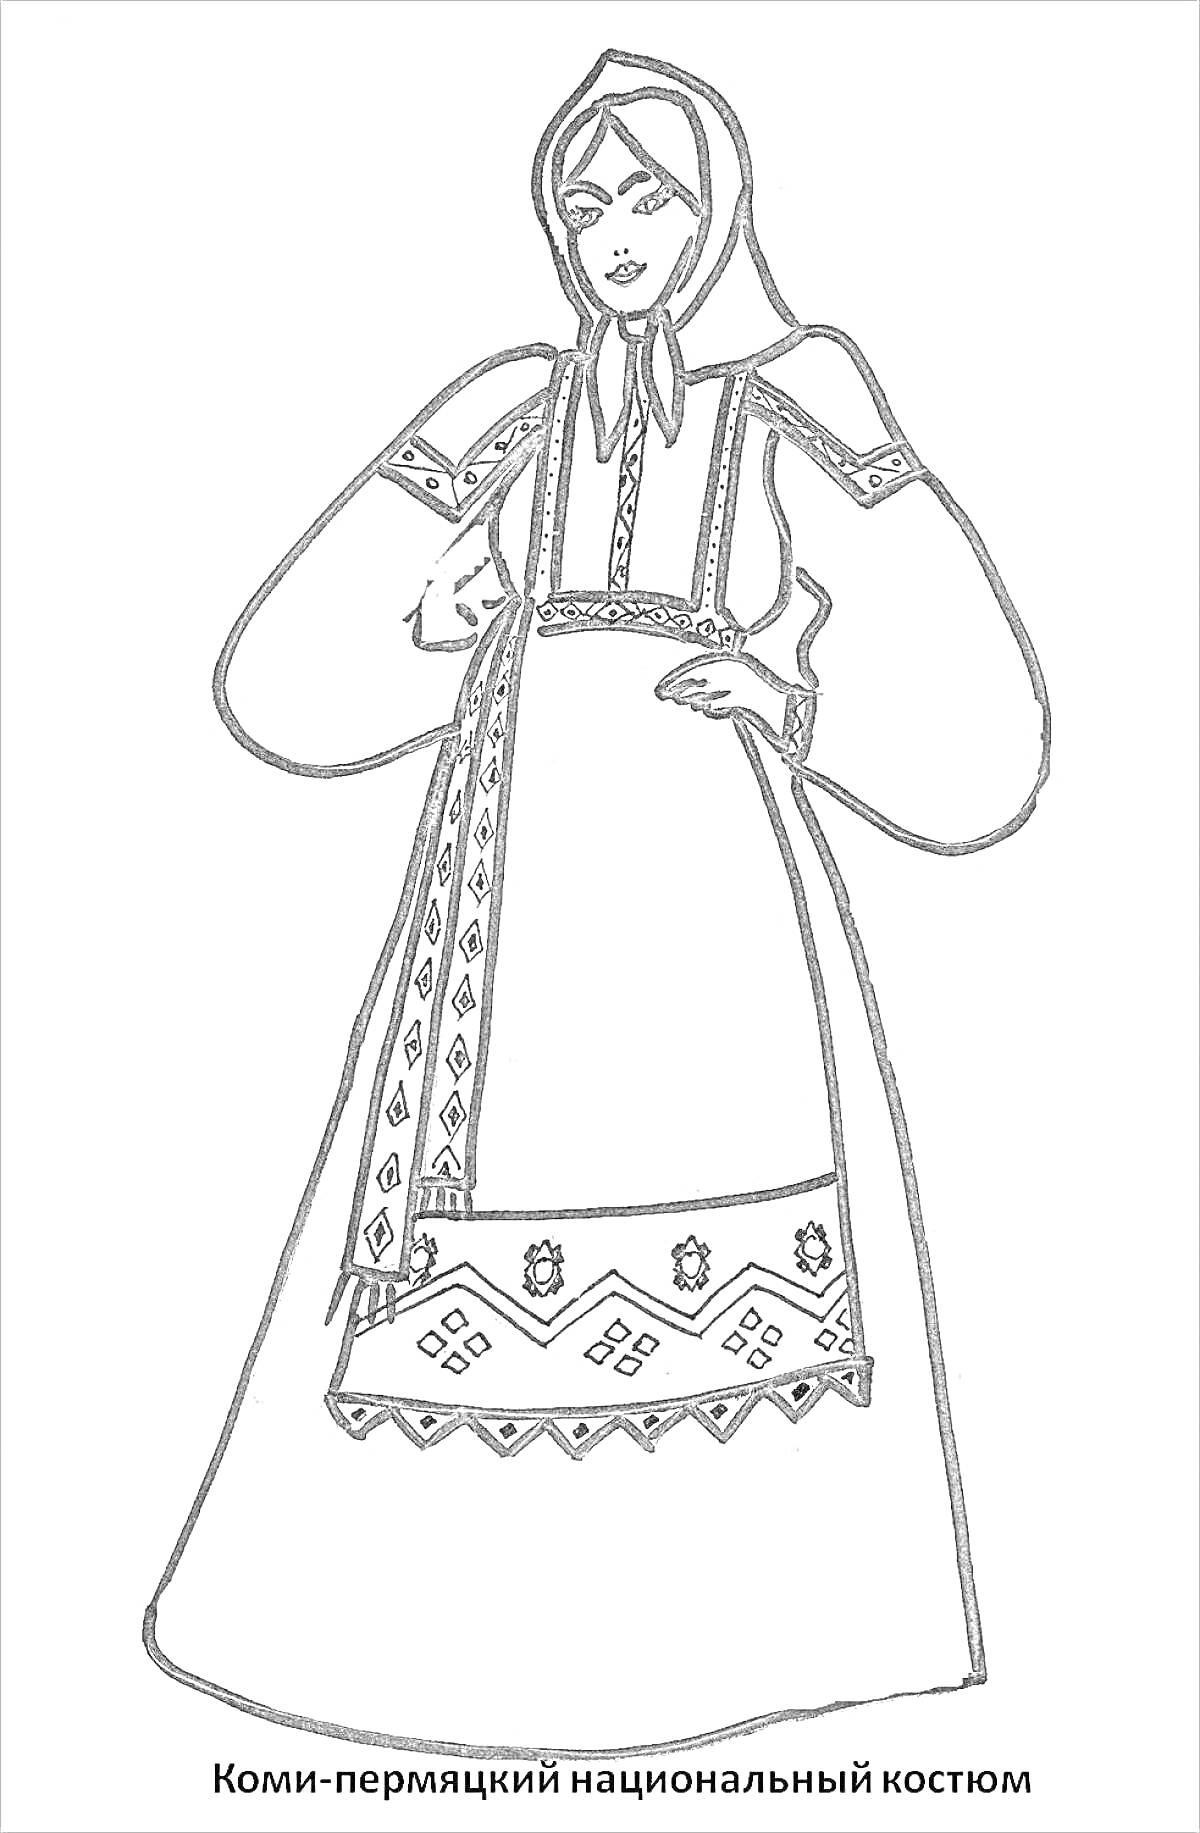 Раскраска Коми-пермяцкий национальный костюм (головной убор, рубаха с длинными рукавами, сарафан, фартук с вышивкой)